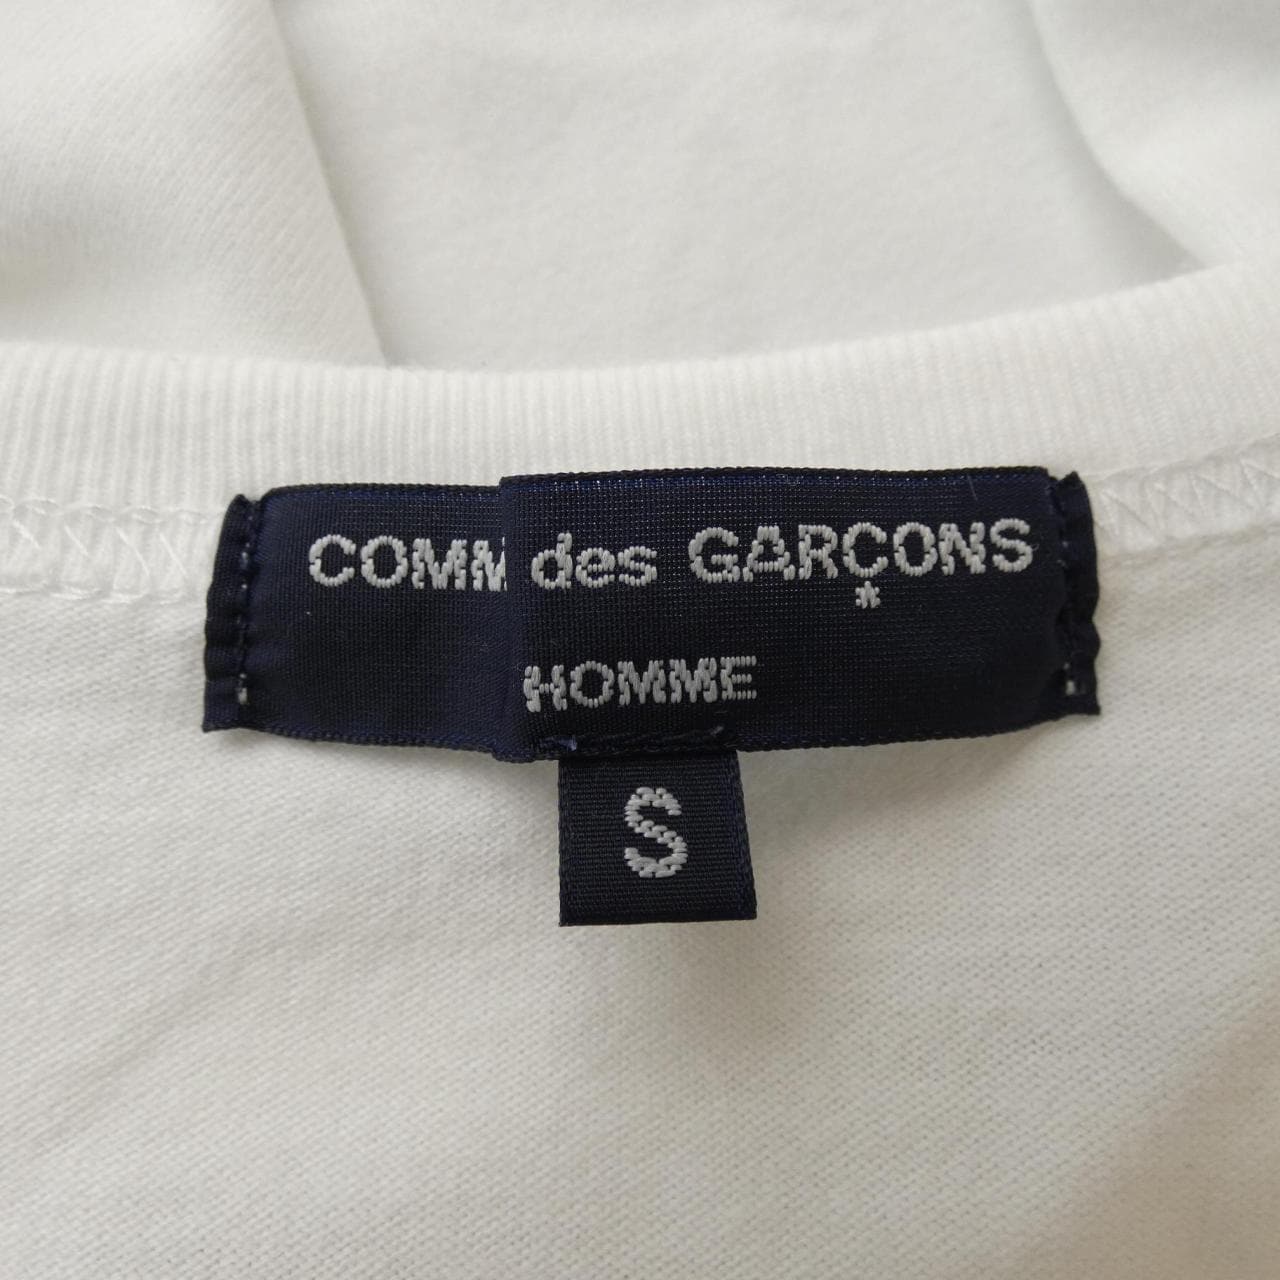 コムデギャルソンオム GARCONS HOMME Tシャツ